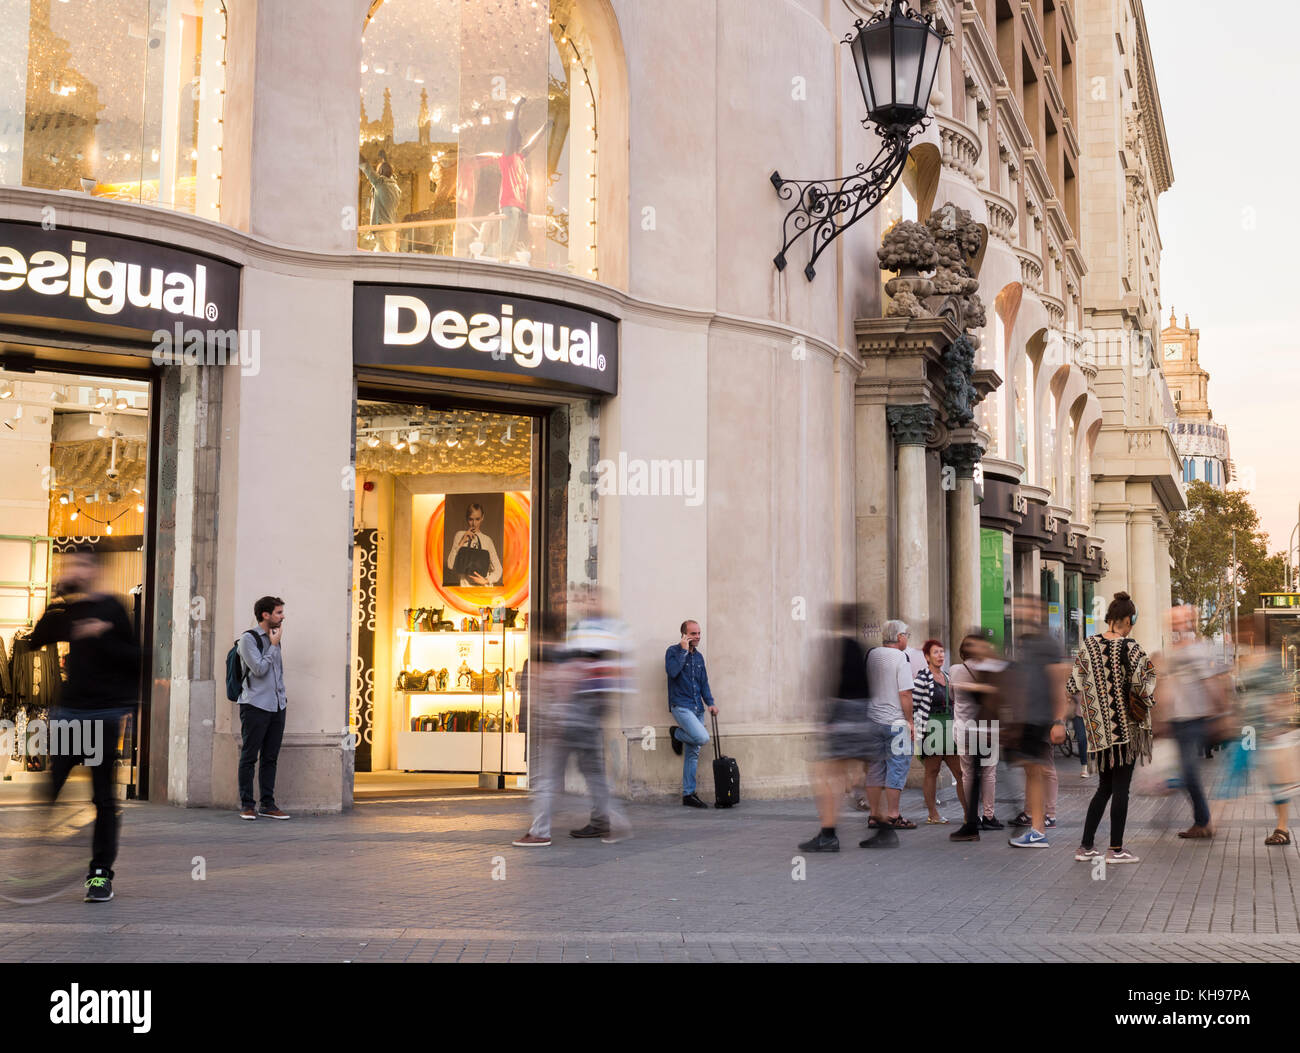 Desigual Clothing Store in der Nähe der Las Ramblas in Barcelona,  Katalonien, Spanien Stockfotografie - Alamy